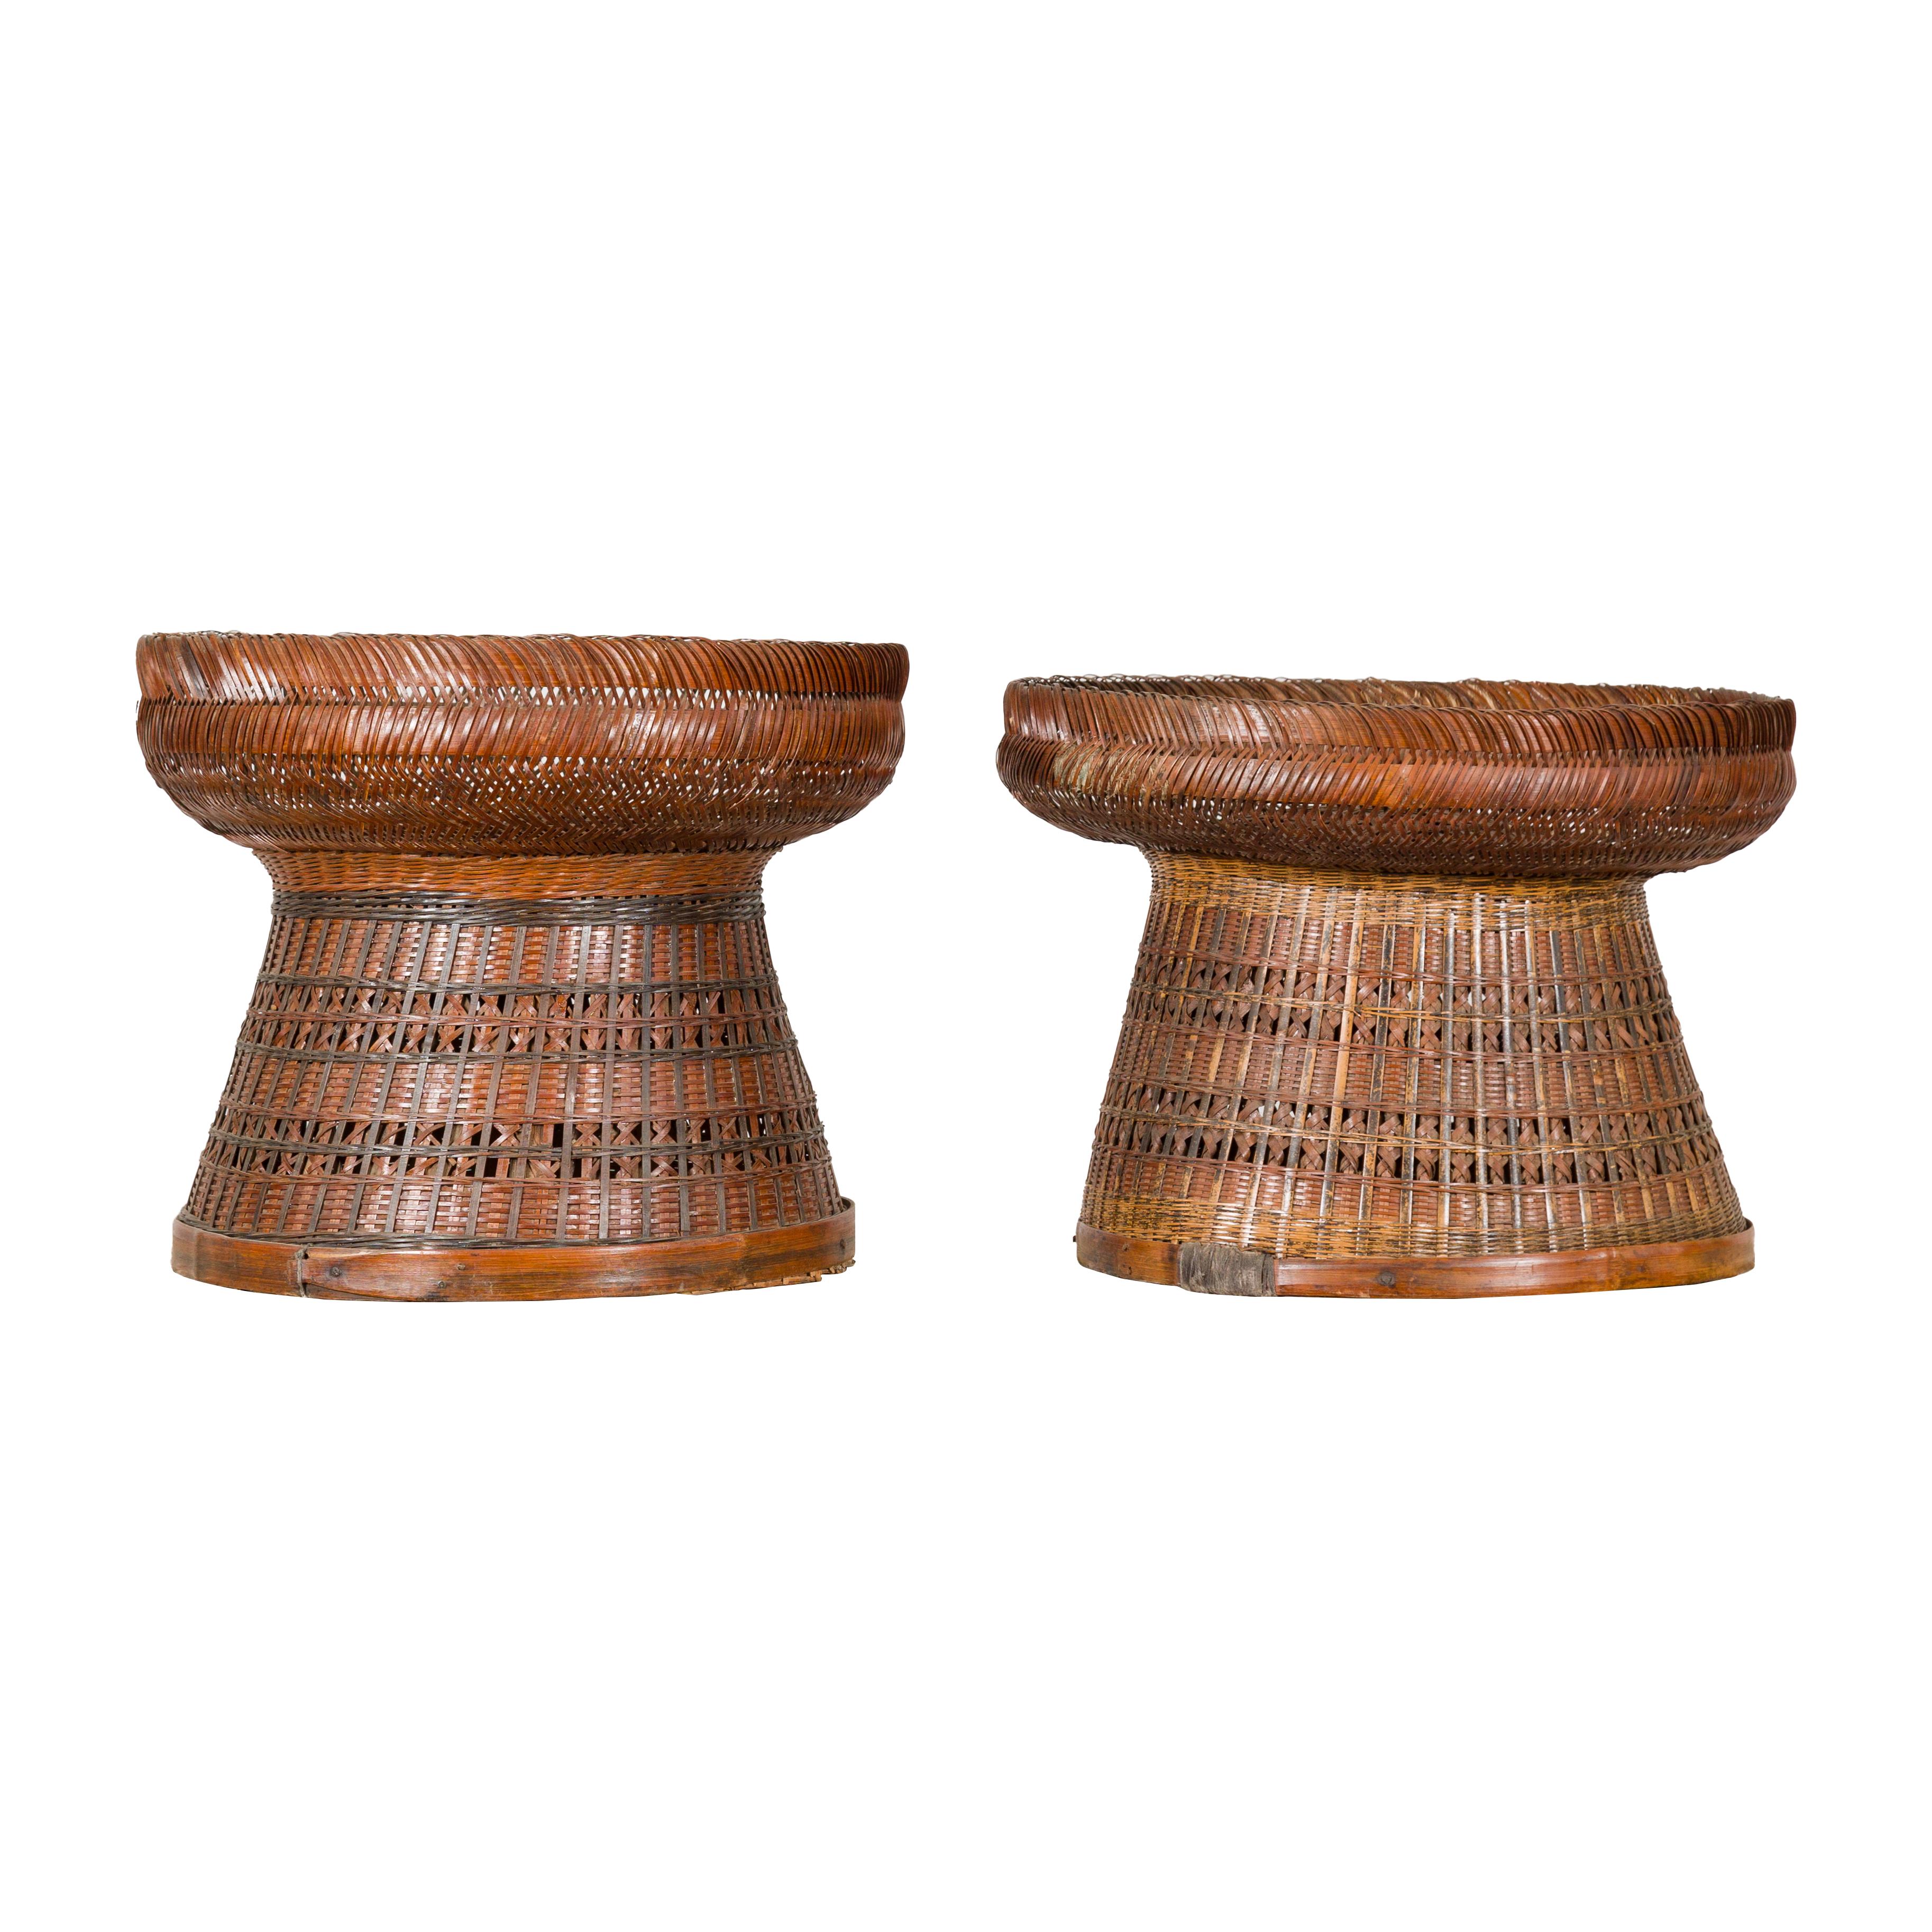 Zwei antike chinesische, handgeflochtene Rattankörbe mit runder Oberseite und spitz zulaufendem Boden. Diese beiden antiken chinesischen, handgeflochtenen Rattankörbe mit ihren runden Oberteilen und den sich sanft verjüngenden Böden geben einen